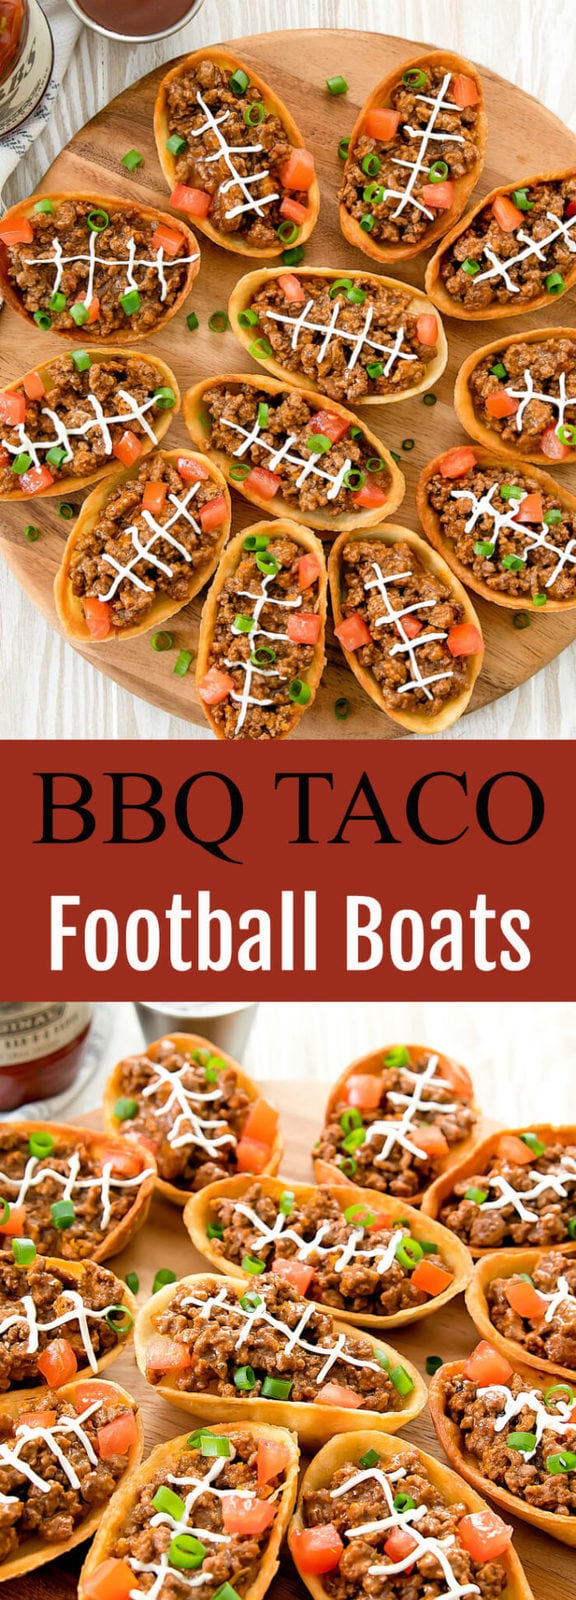 BBQ Taco Football Boats